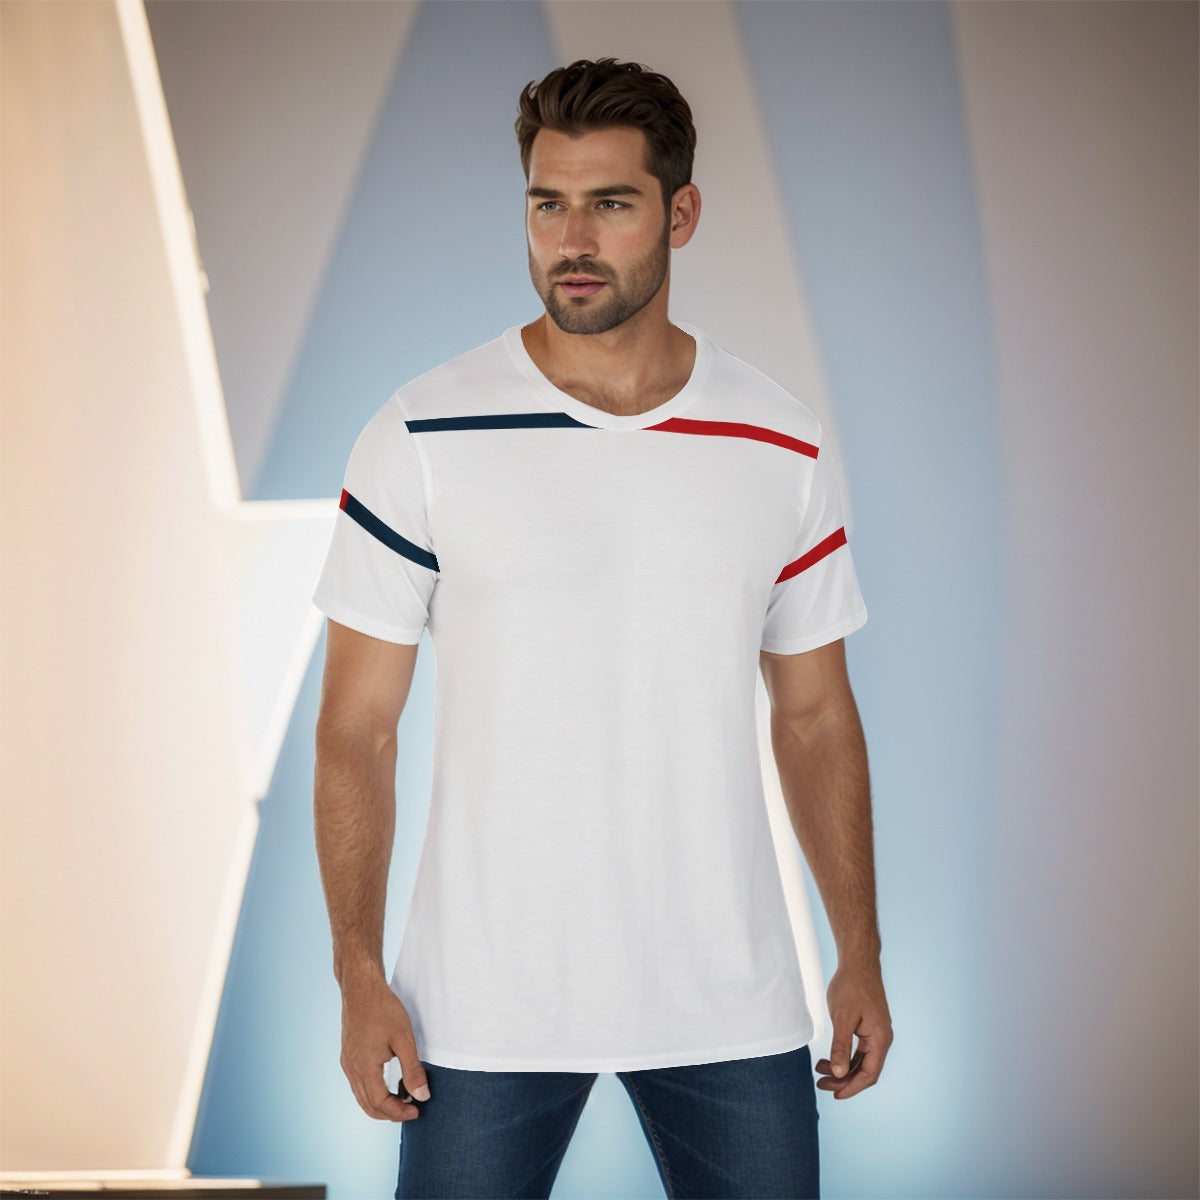 Men's O-Neck T-Shirt Design